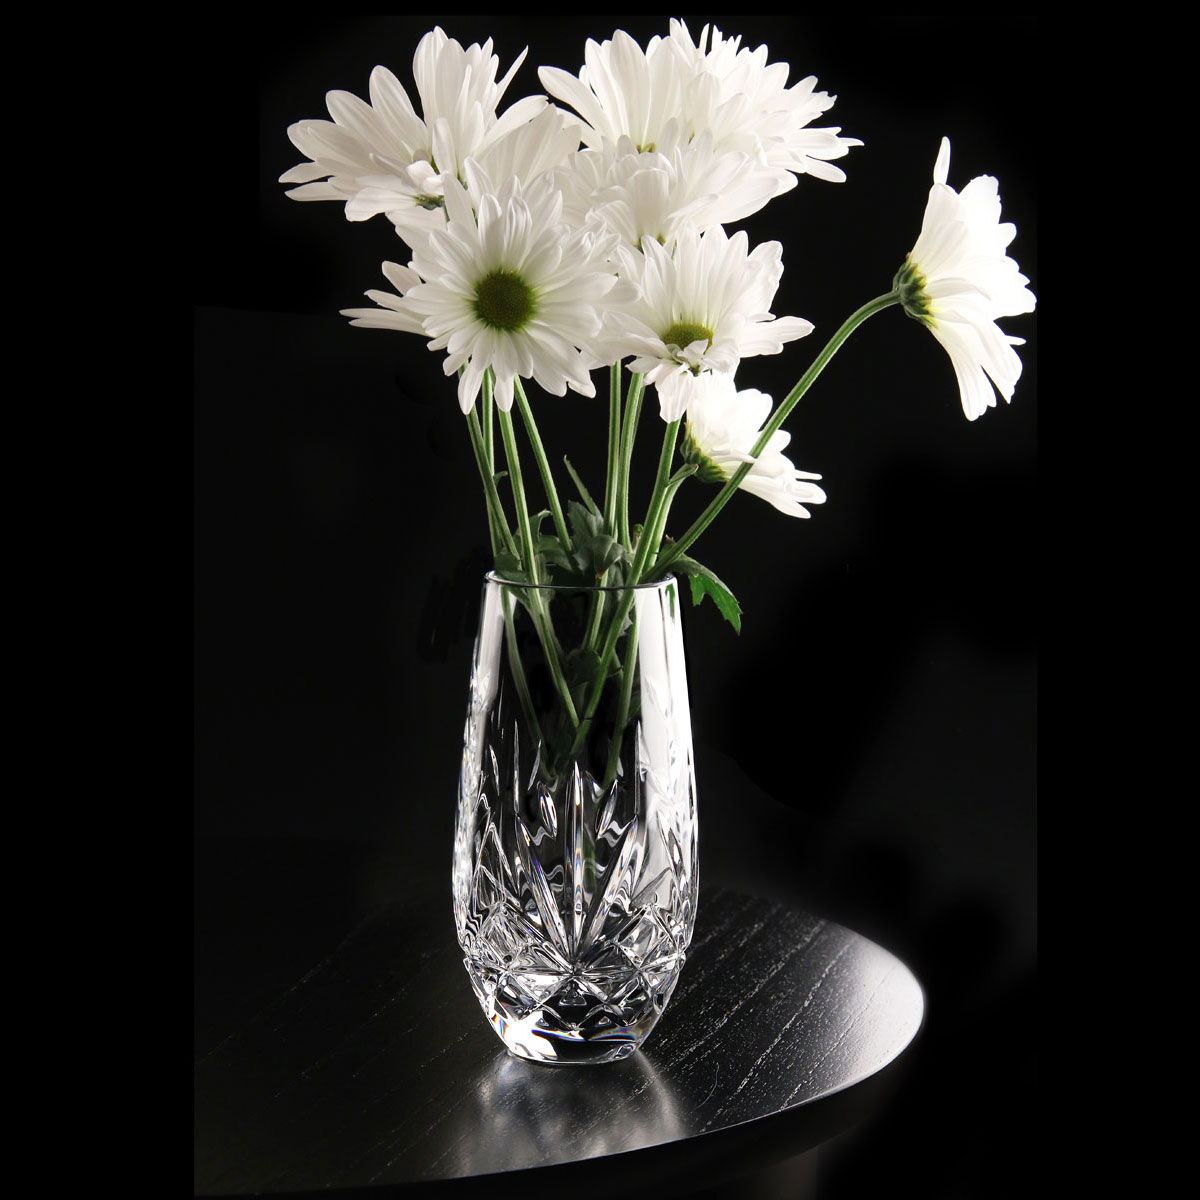 Cashs Ireland, Annestown 6" Crystal Vase